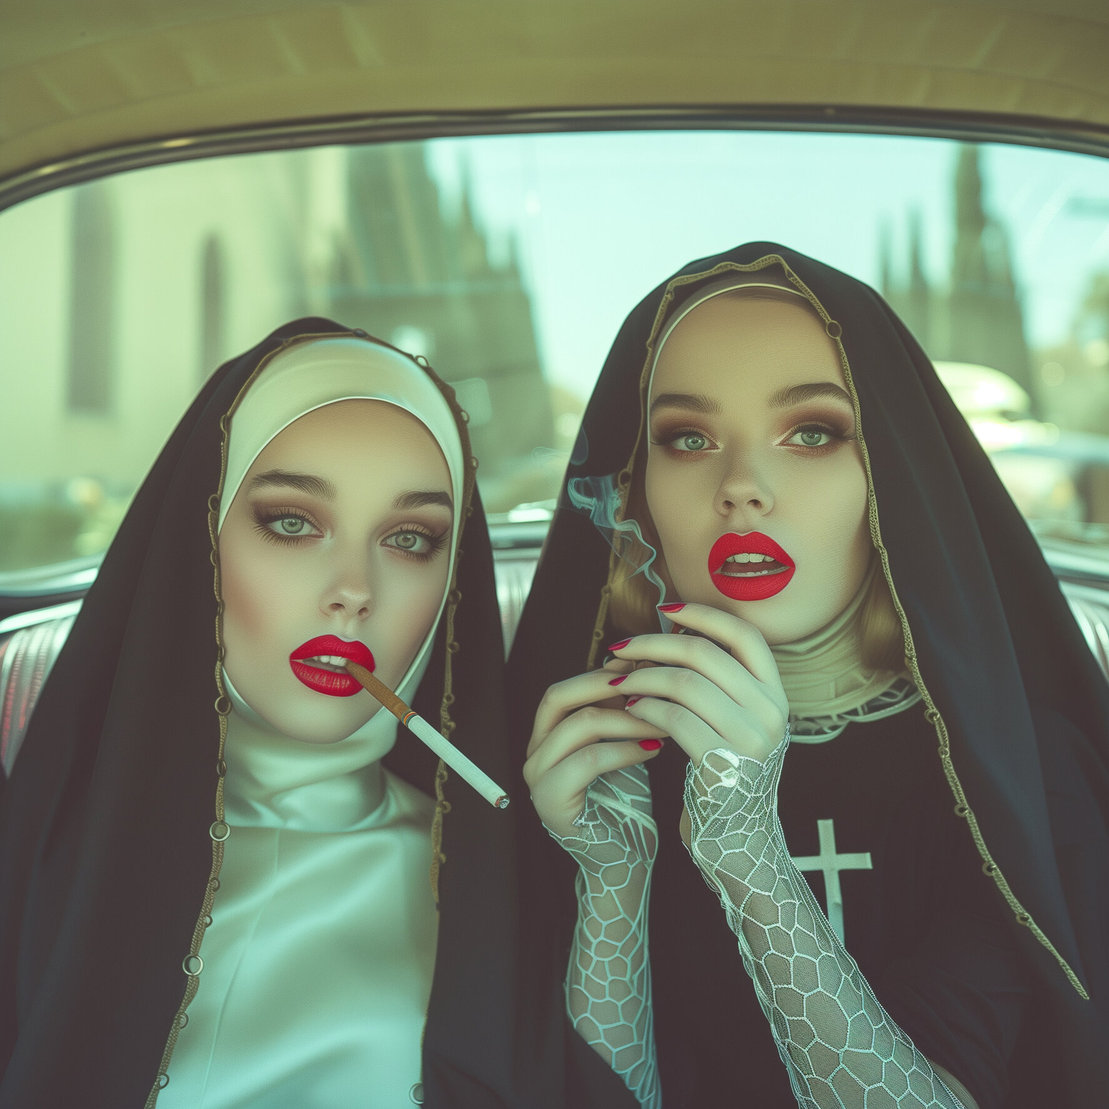 Smokings nuns